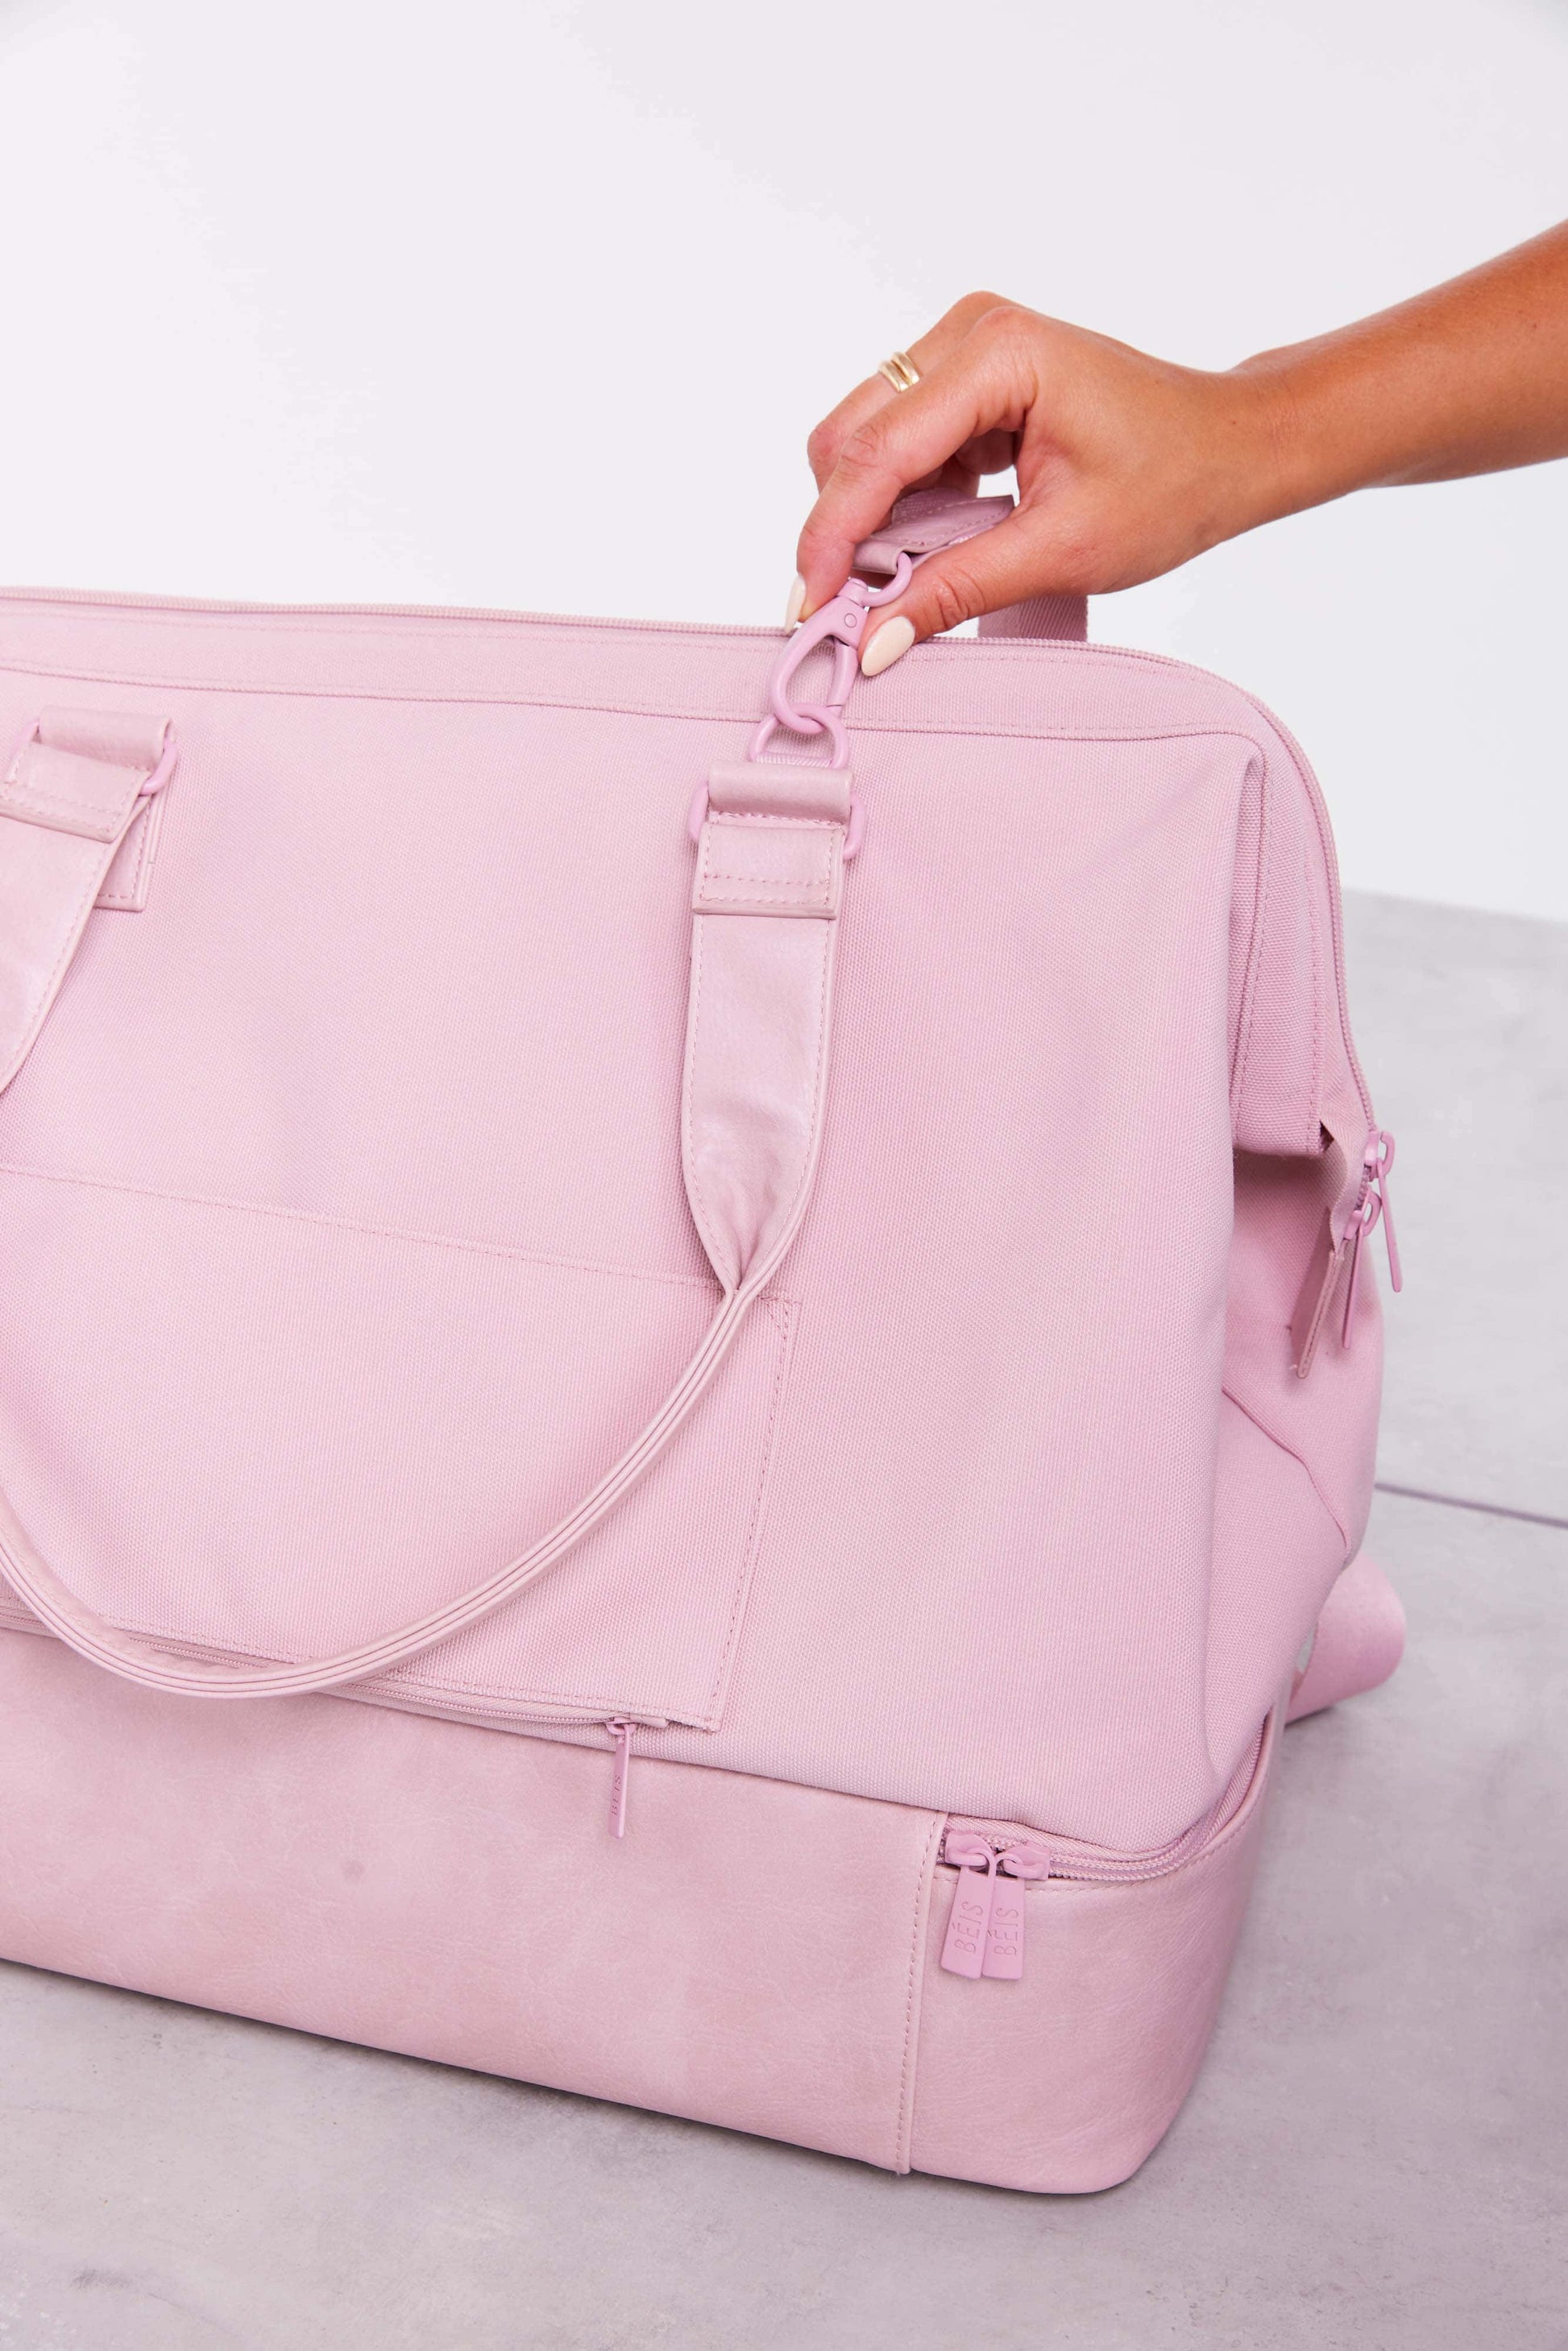 pink weekender bag